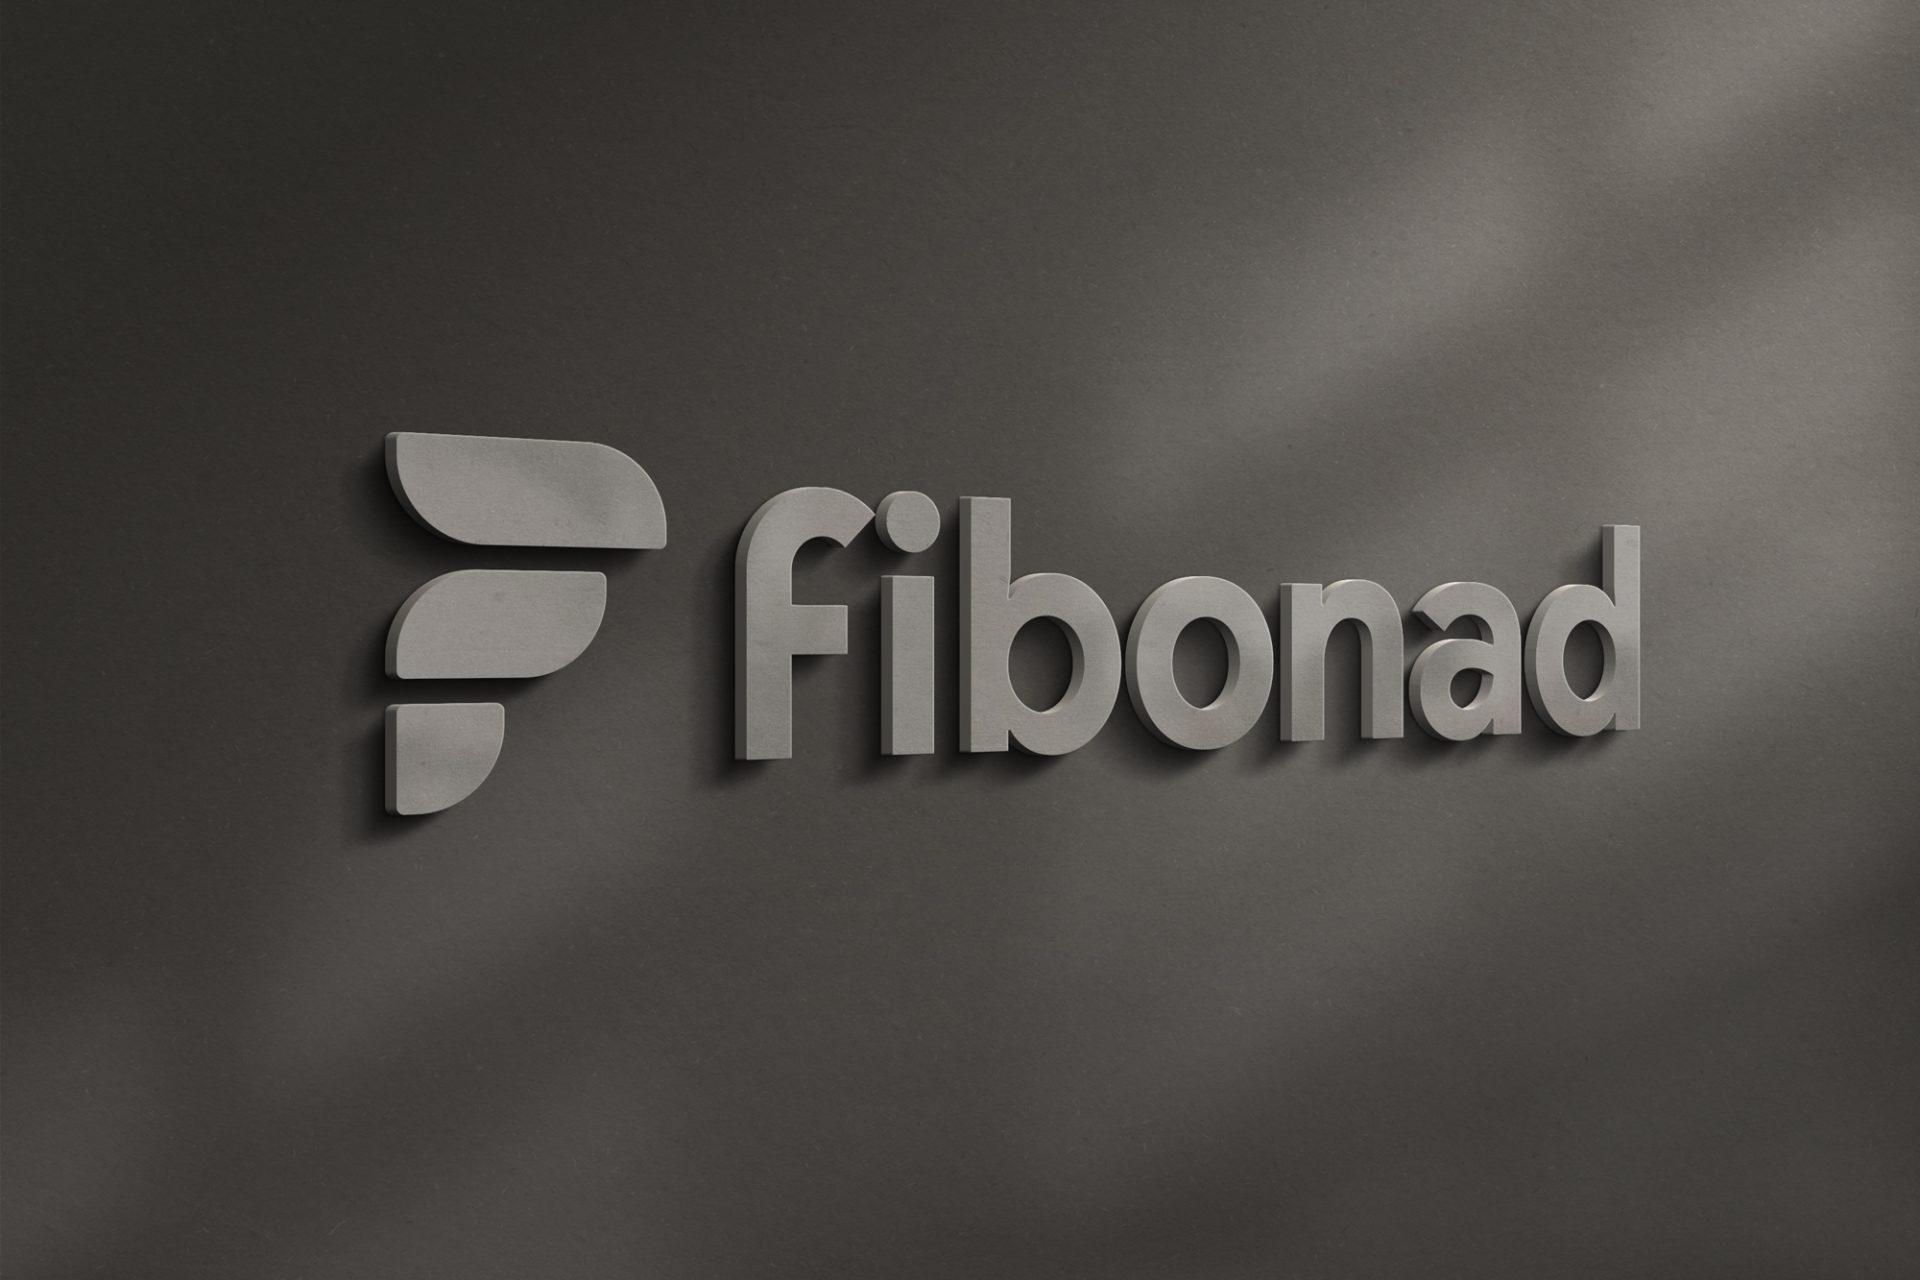 Diseño de logo Fibonad